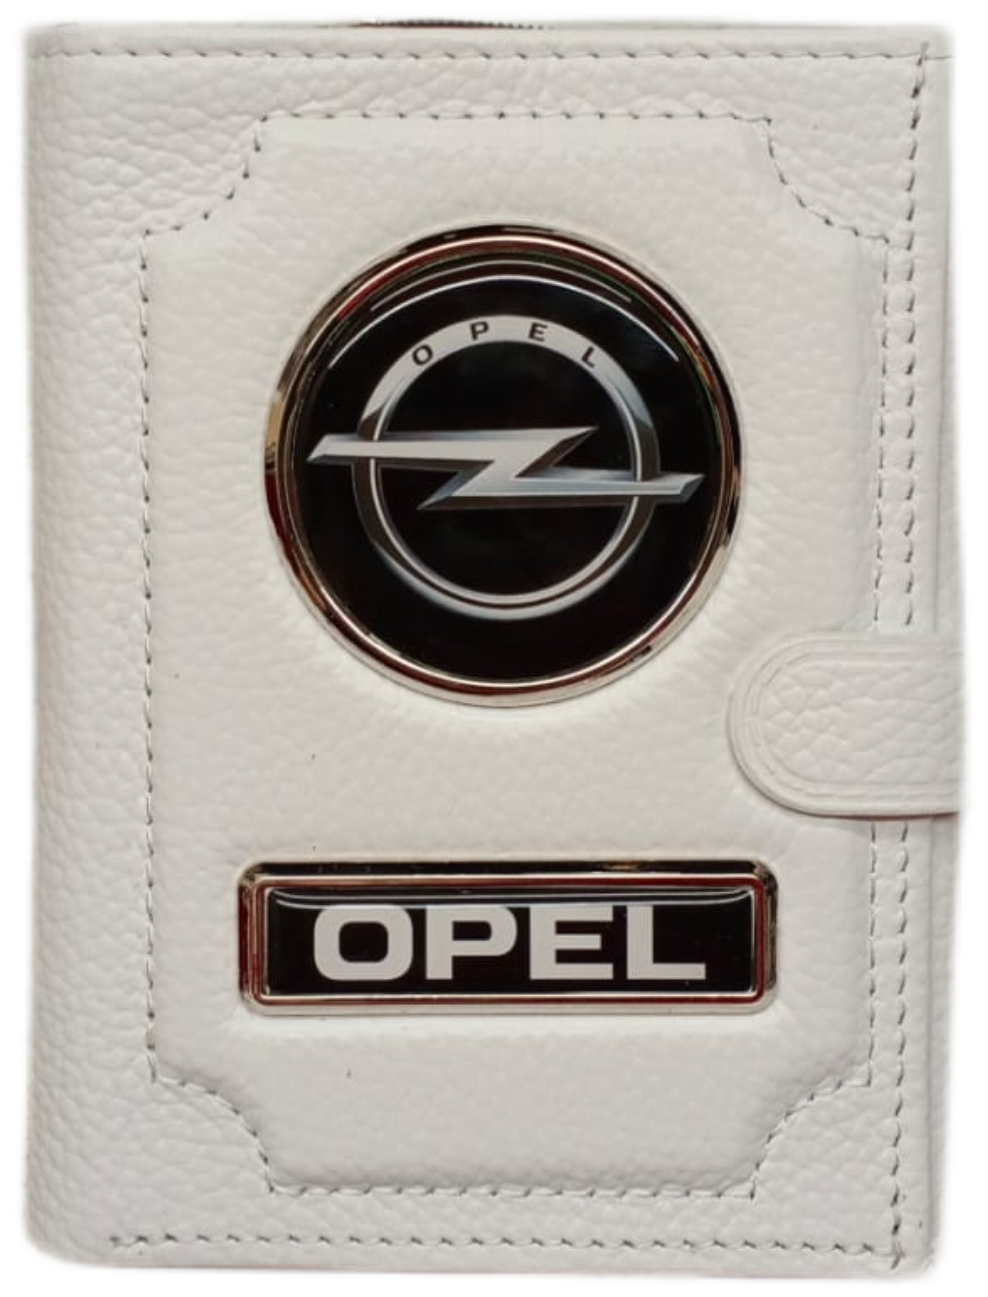 Обложка для автодокументов и паспорта Opel (опель) кожаная флотер 4 в 1